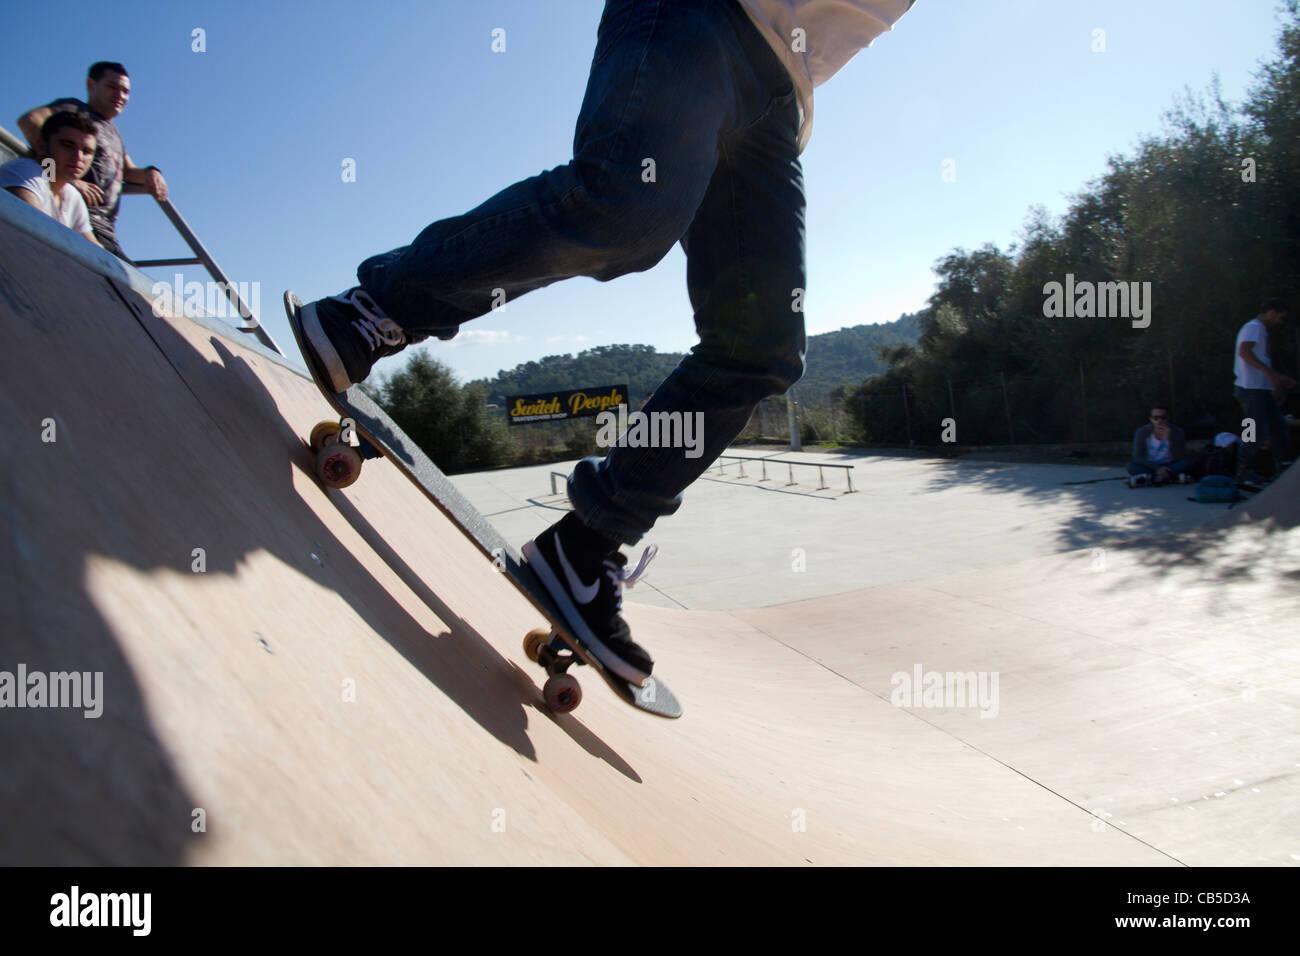 Persona en patineta skateboarding en vert en action sport Foto de stock